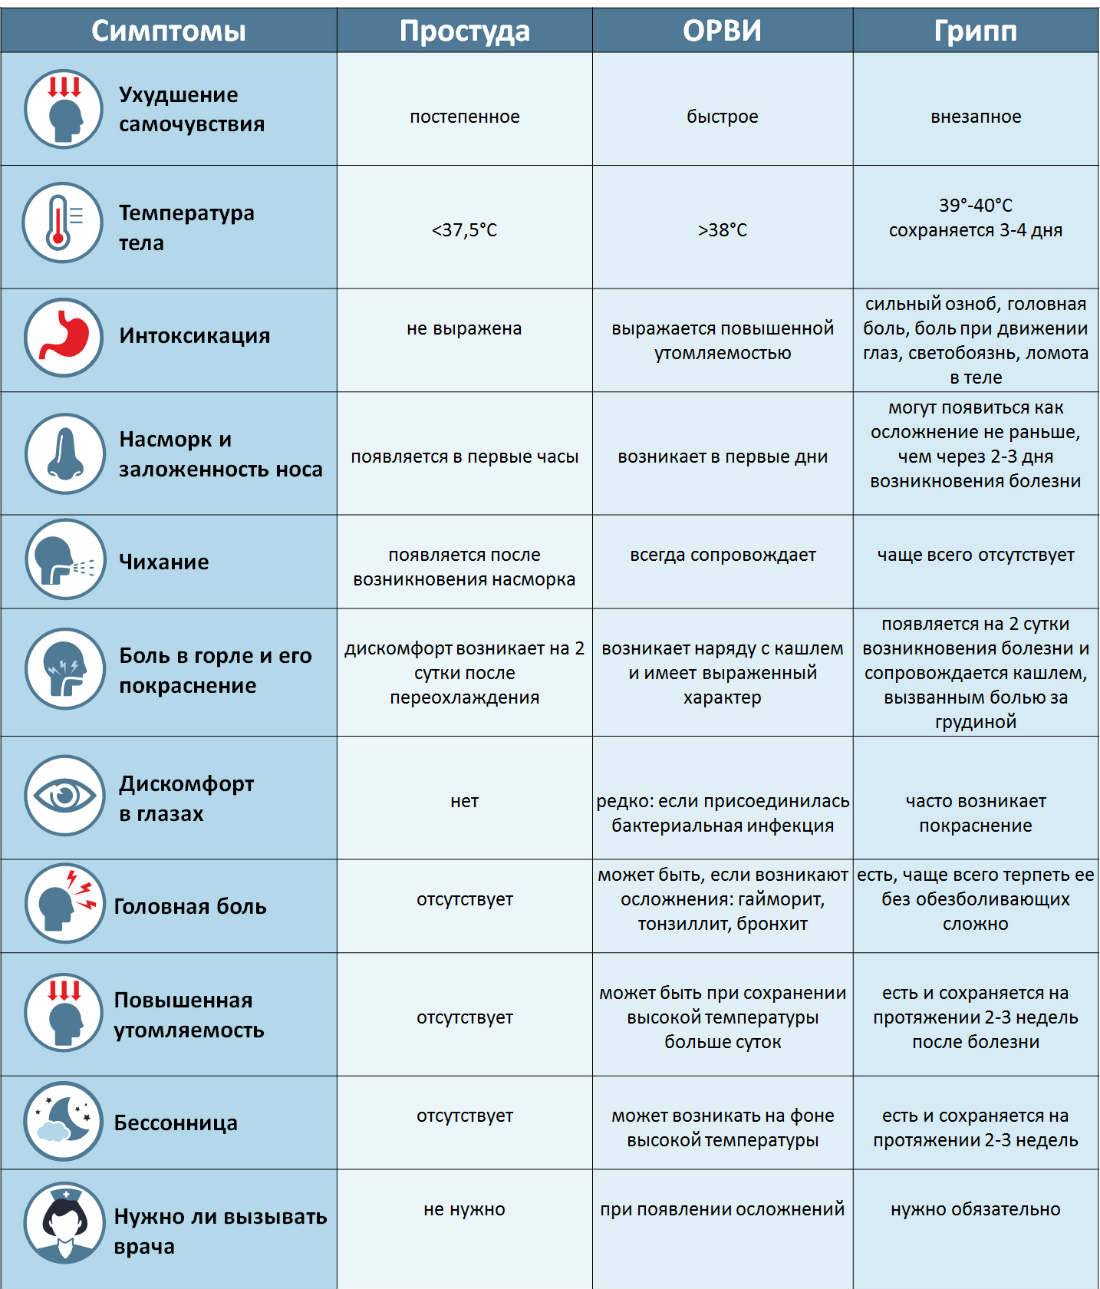 Как отличить грипп от орз и орви: сравнительная таблица, симптомы и особенности